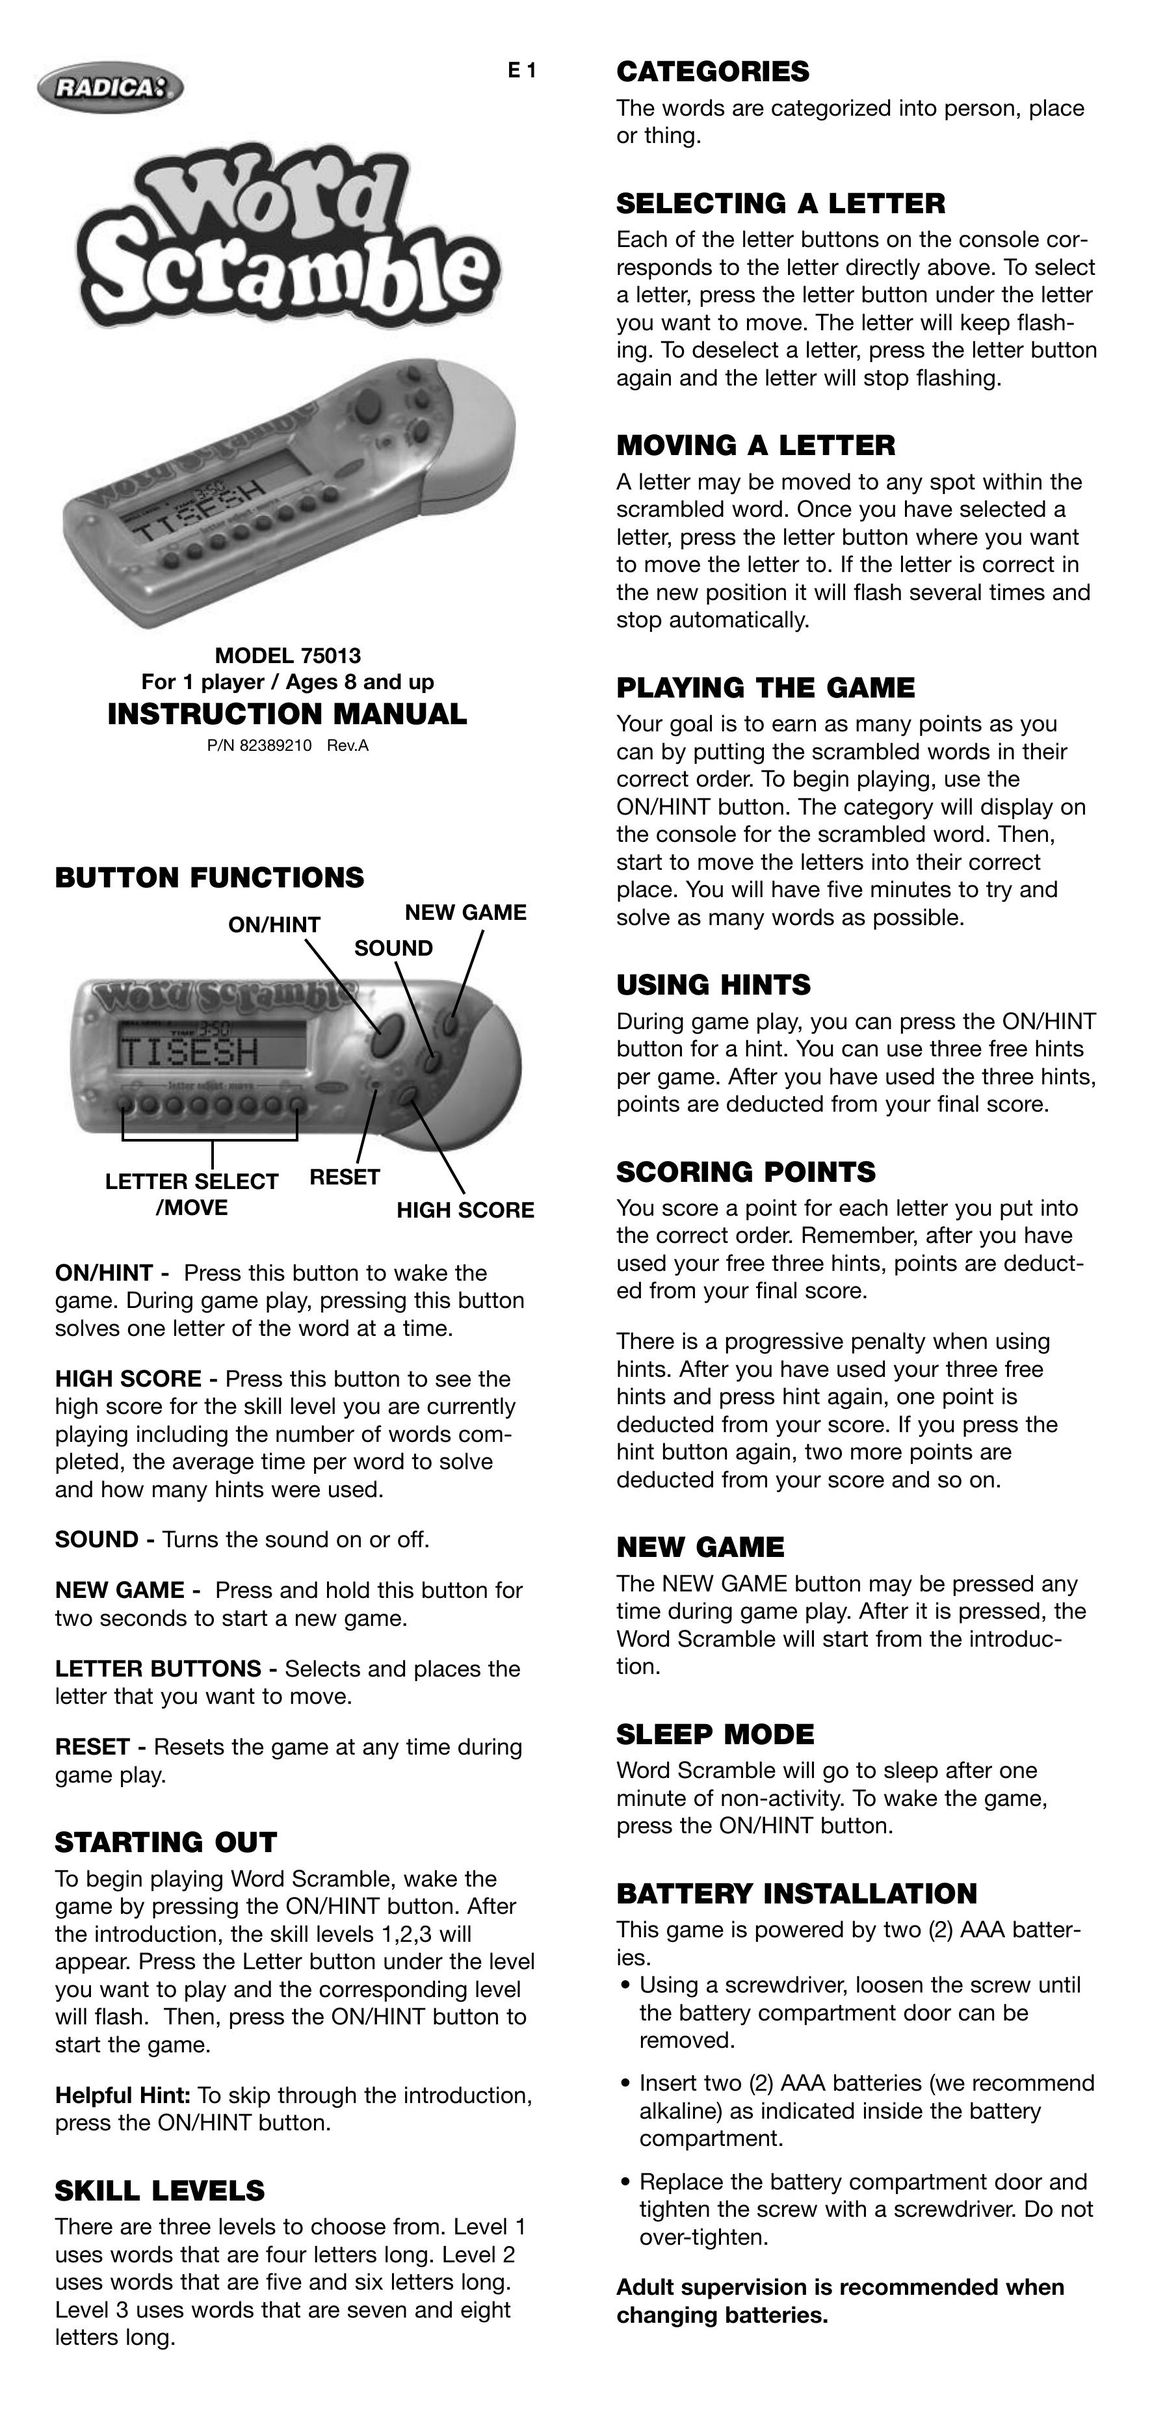 Radica Games 75013 Games User Manual